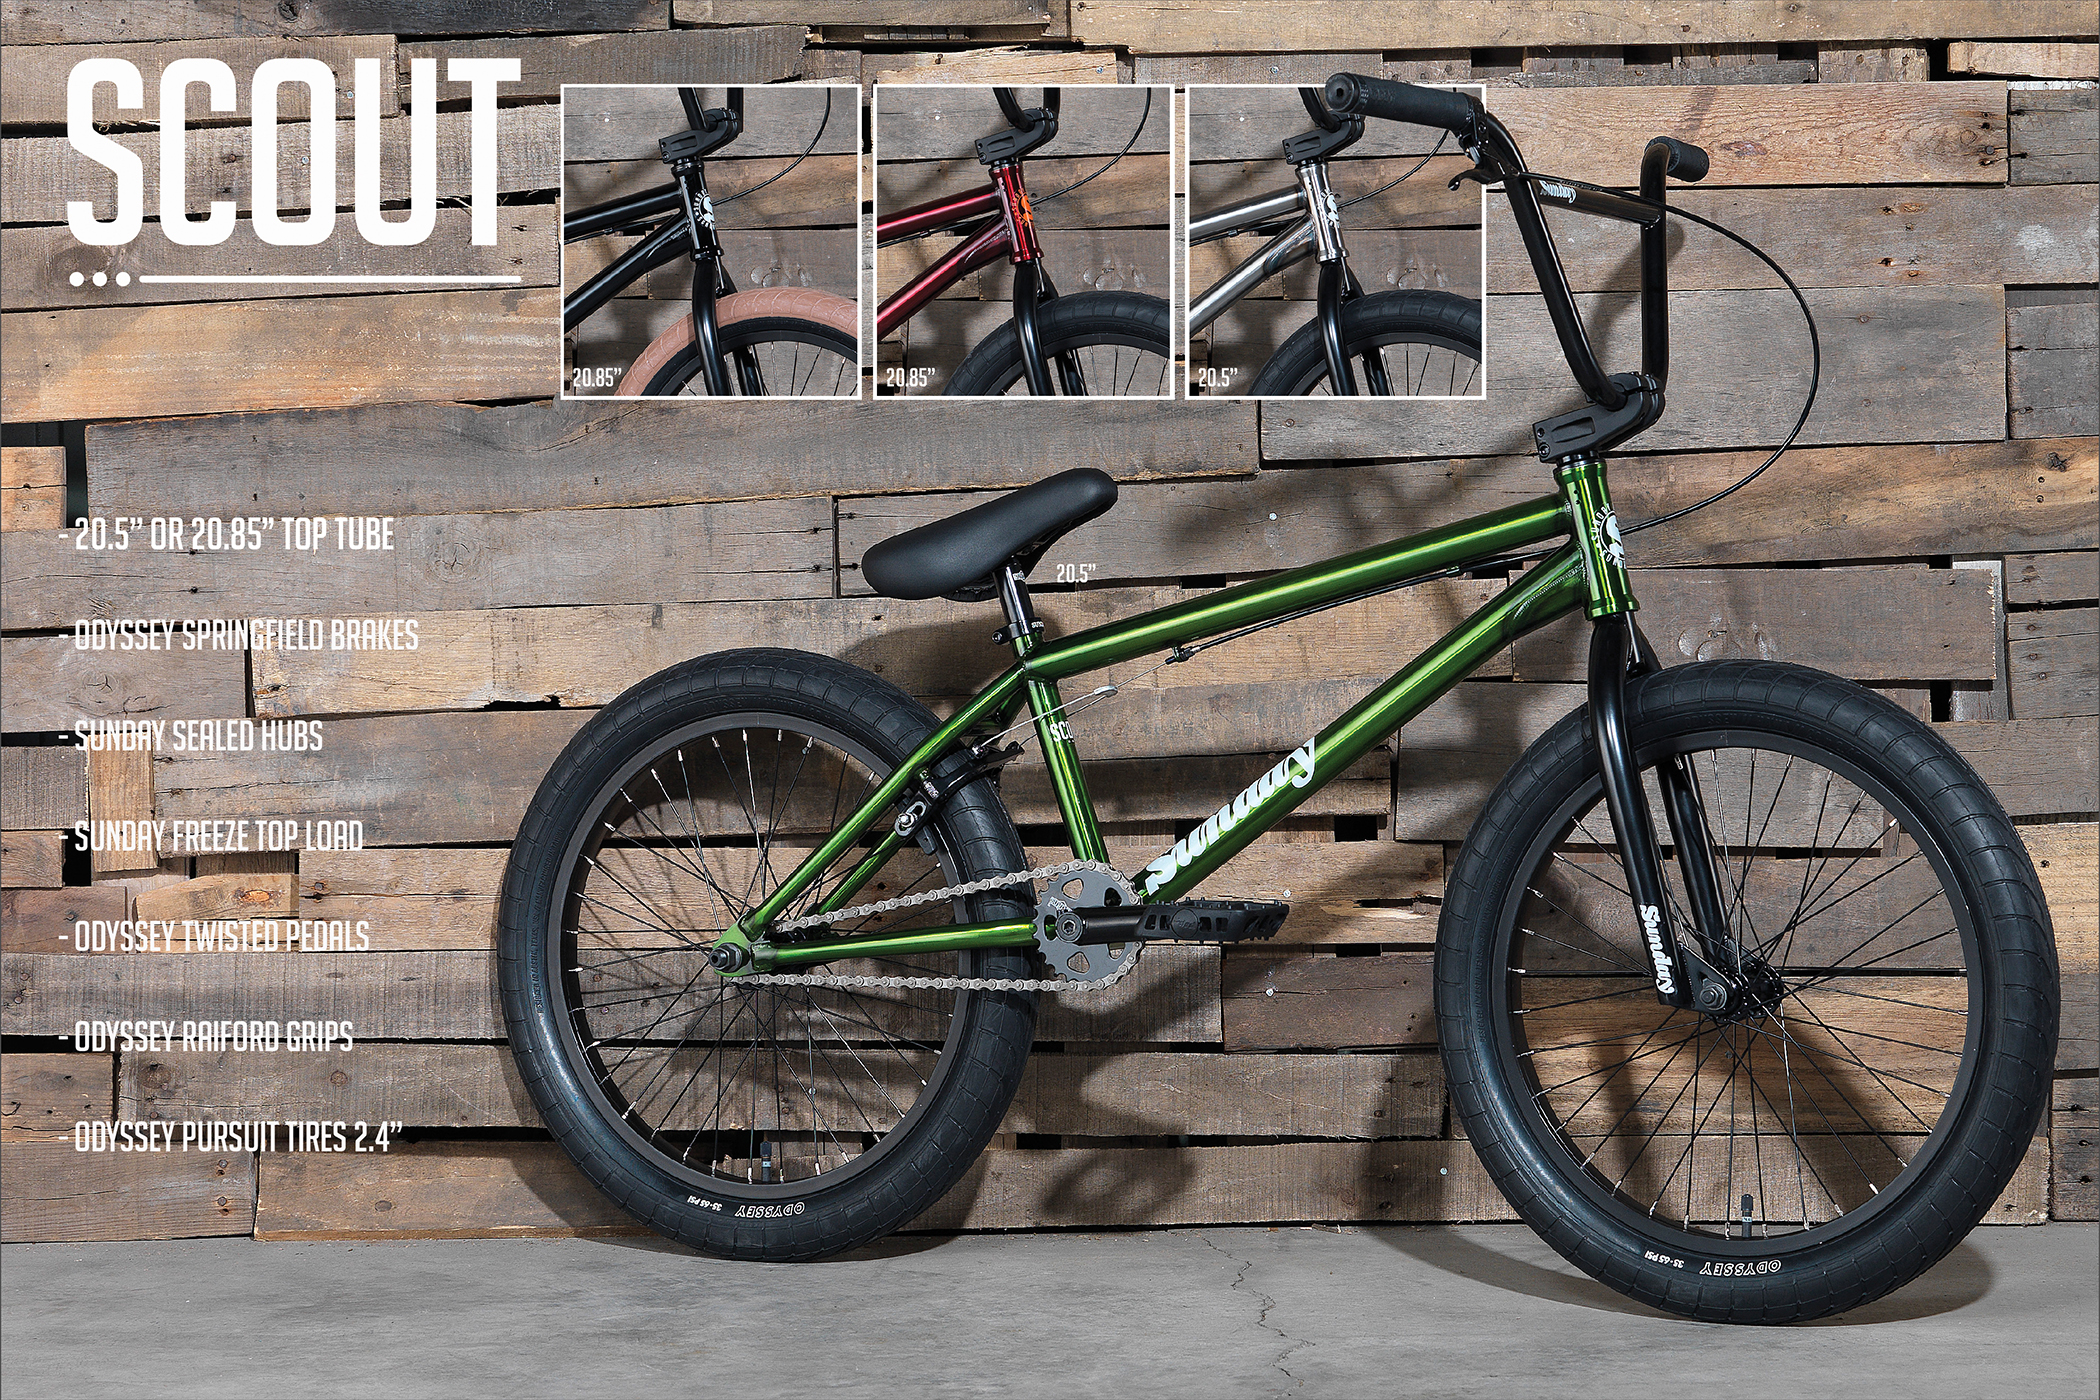 dark green bmx bike